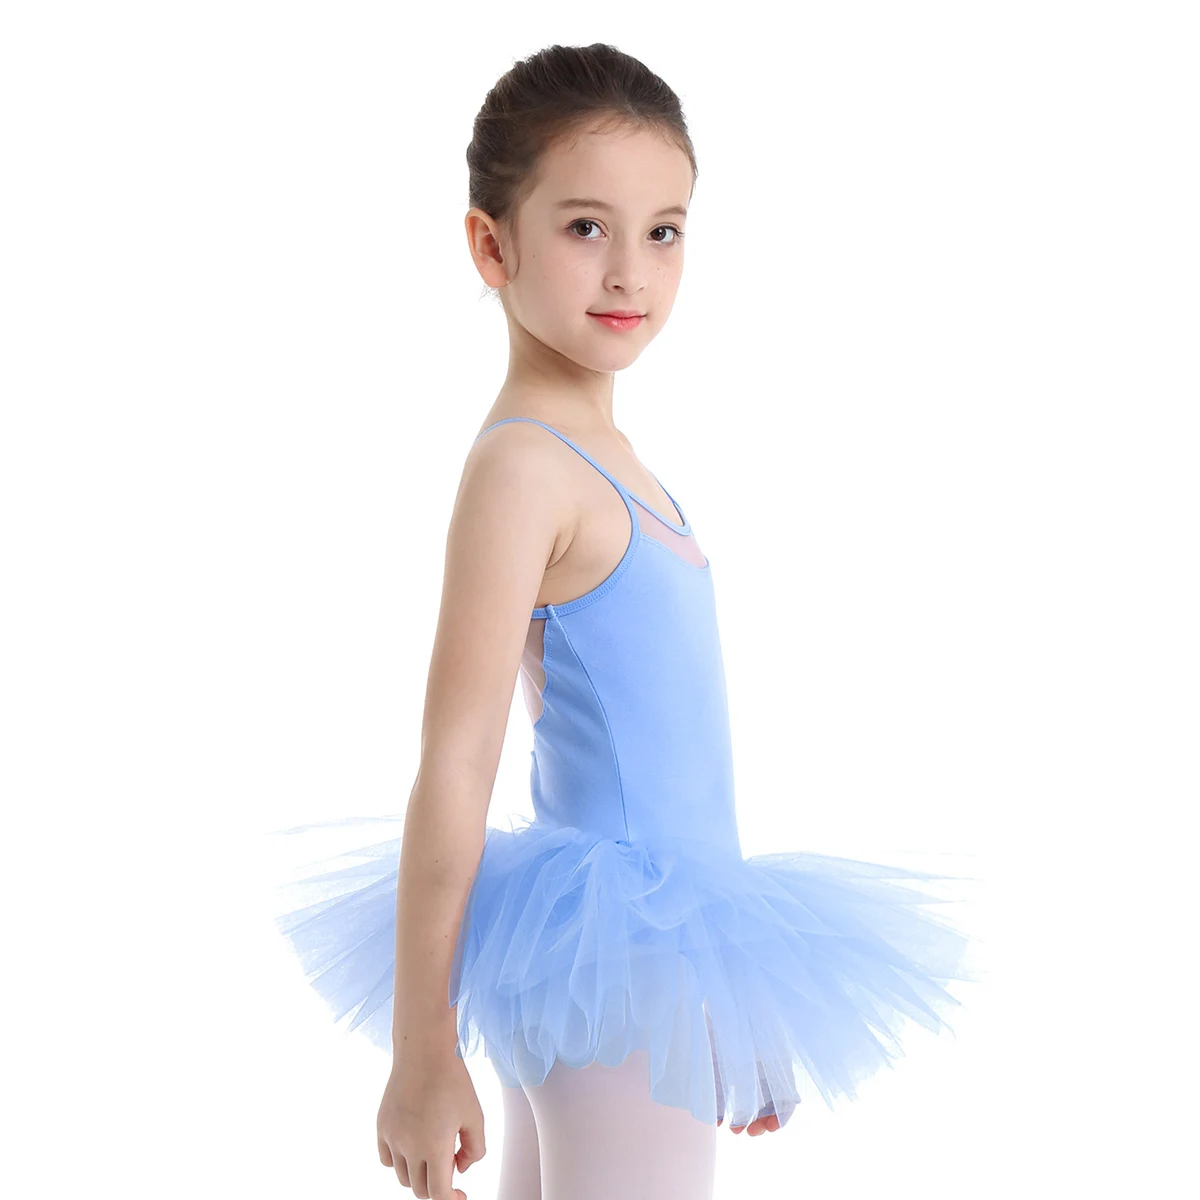 IEFiEL/балетное платье-пачка для детей, купальный костюм с вырезами на спине для девочек, фатиновое балетное танцевальное гимнастическое